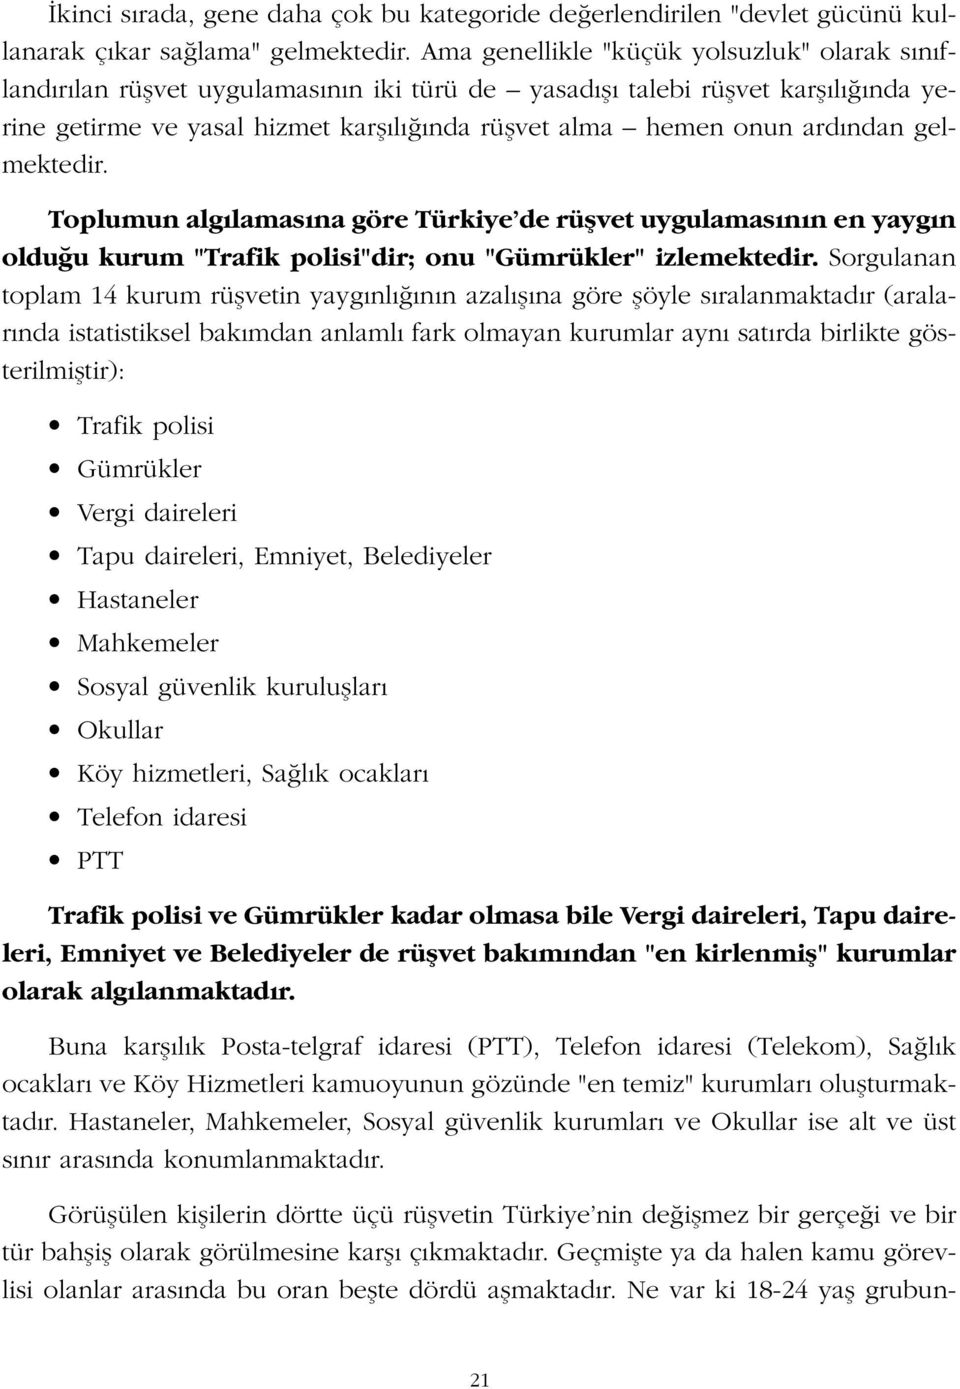 ndan gelmektedir. Toplumun alg lamas na göre Türkiye de rüflvet uygulamas n n en yayg n oldu u kurum "Trafik polisi"dir; onu "Gümrükler" izlemektedir.